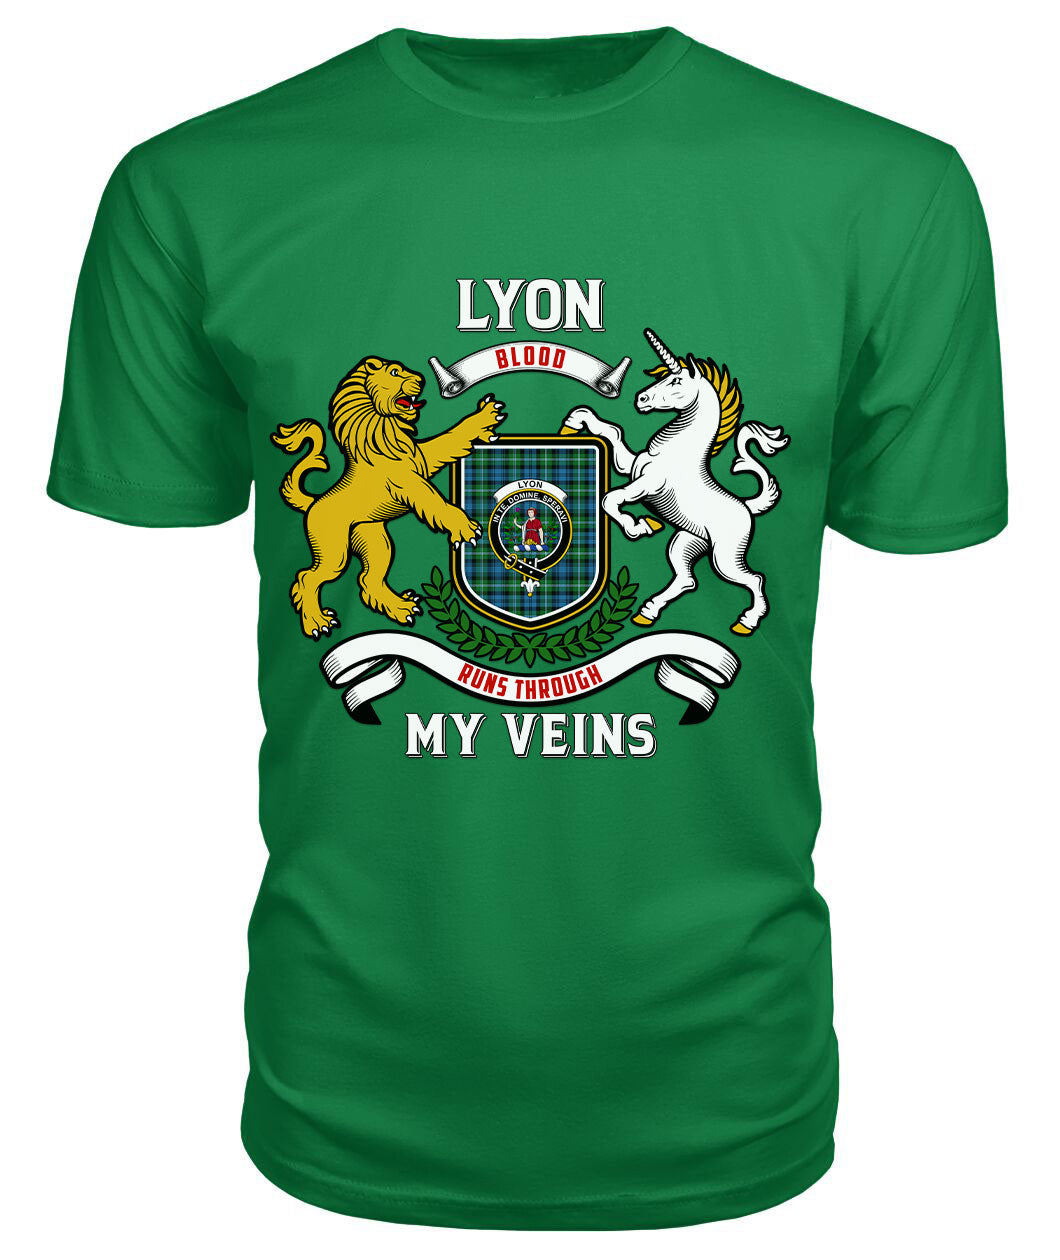 Lyon Tartan Crest 2D T-shirt - Blood Runs Through My Veins Style